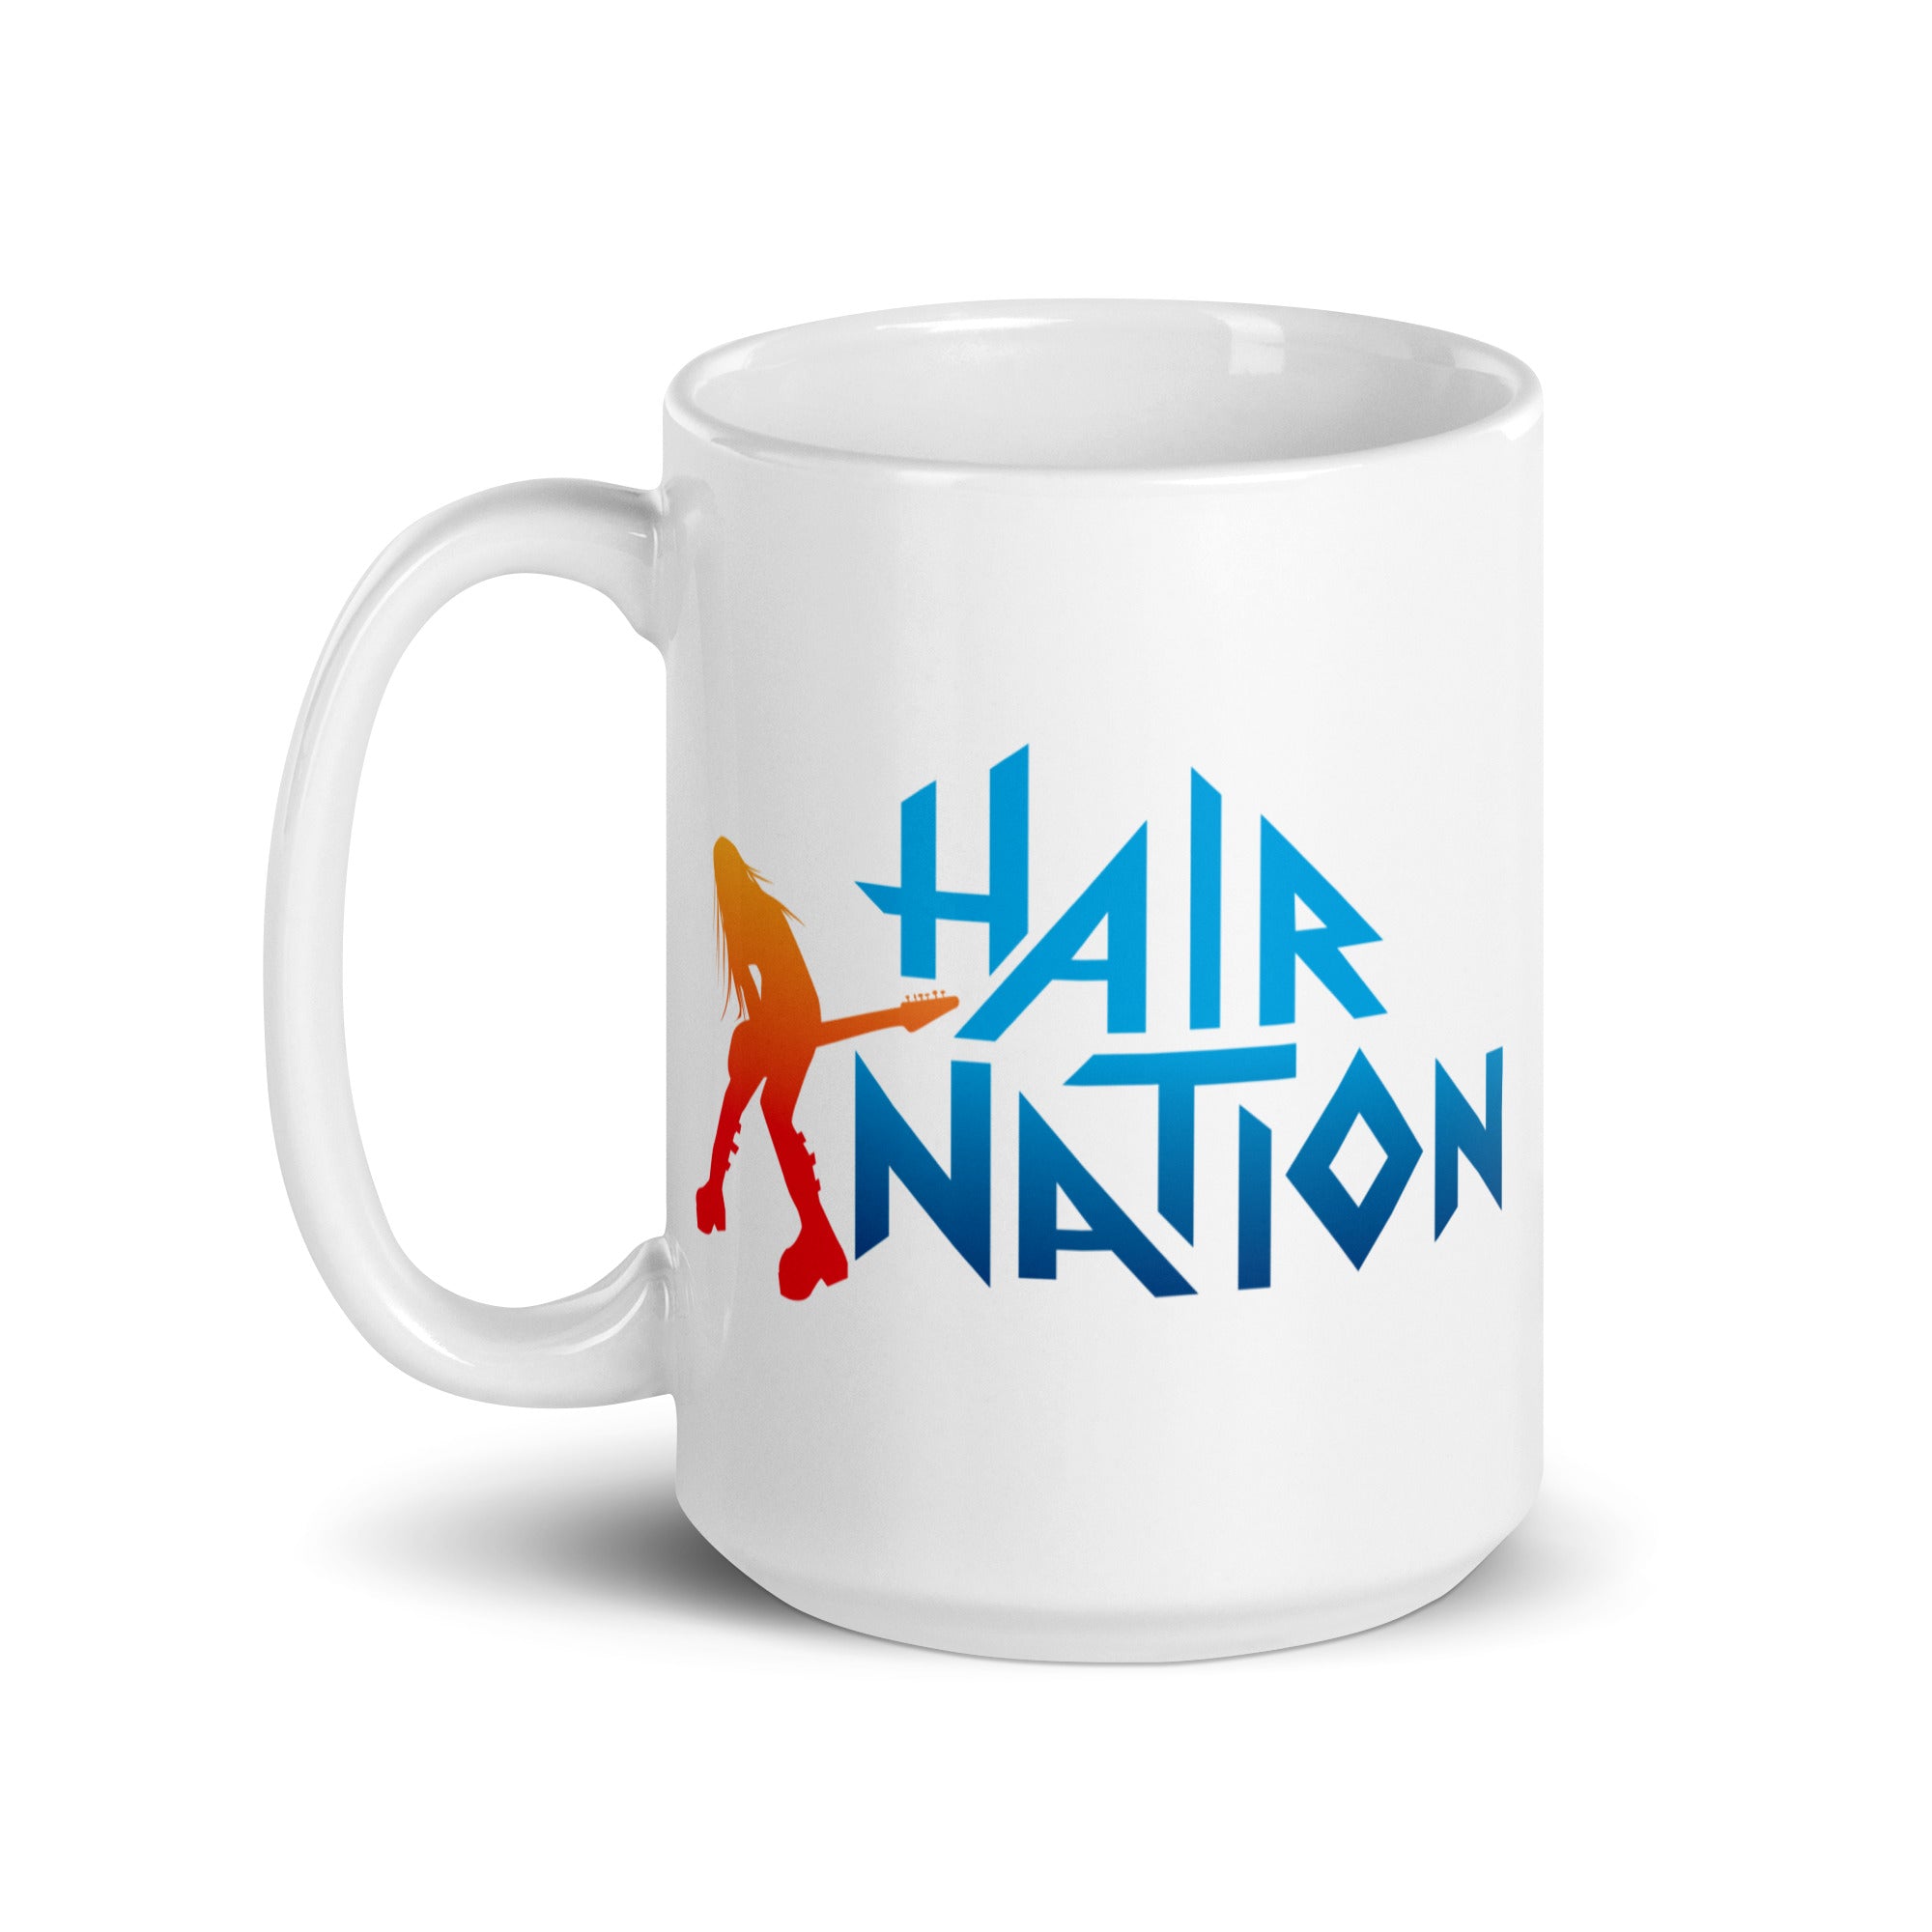 Hair Nation: Mug